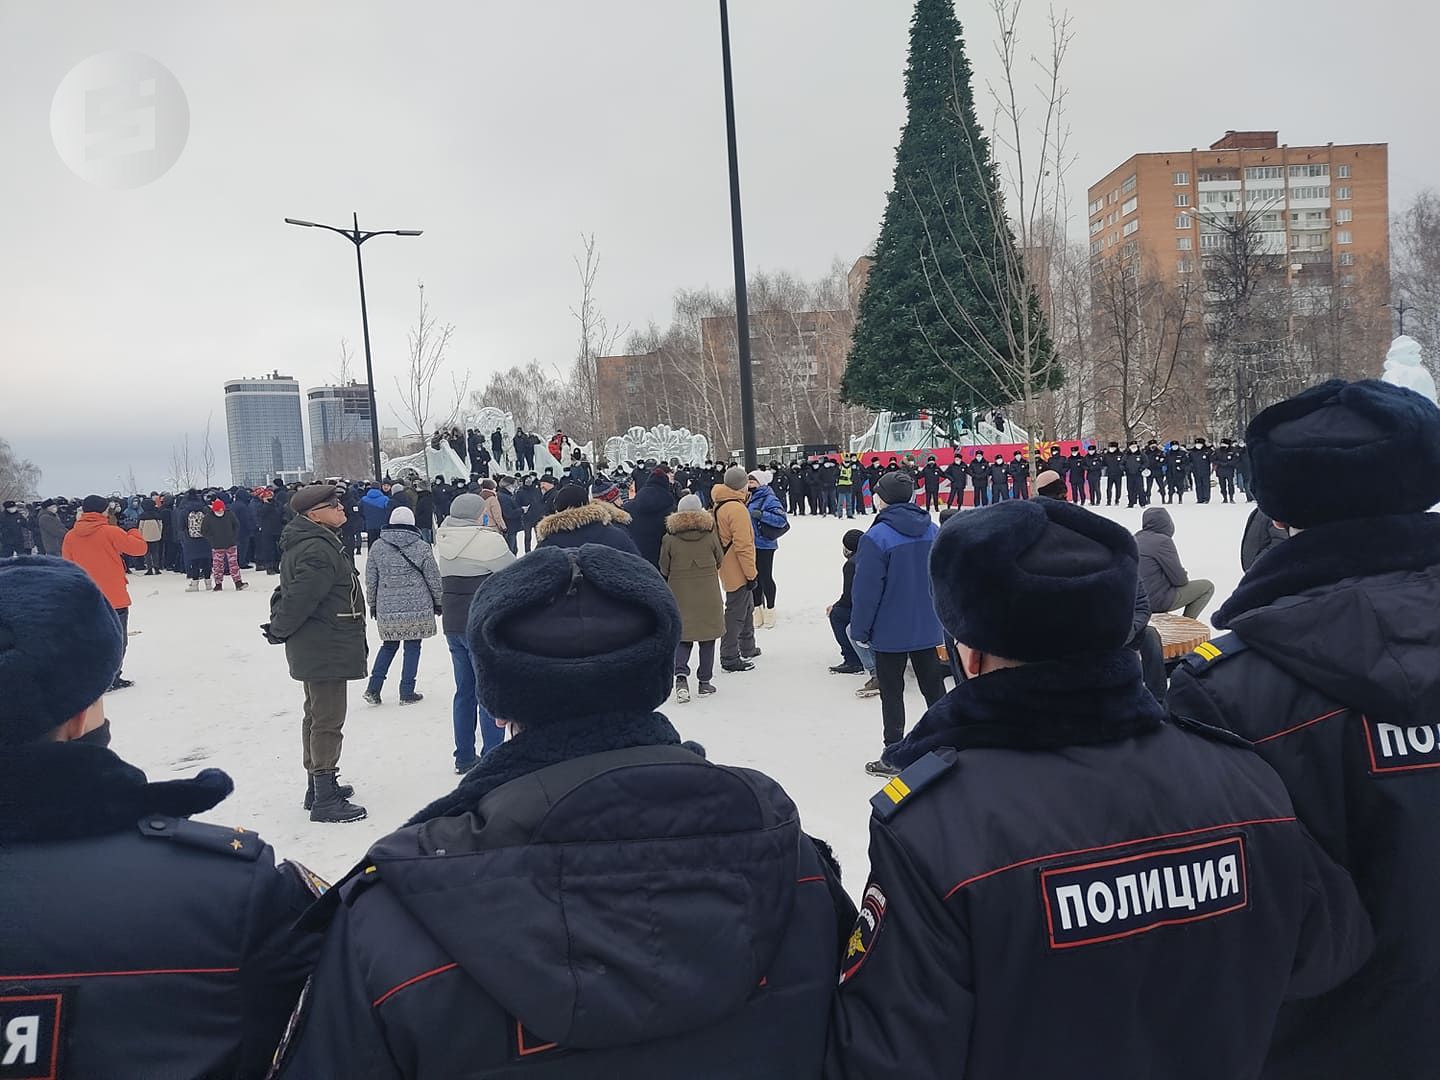 

8 административных дел передали в суд Ижевска после митинга на Центральной площади

